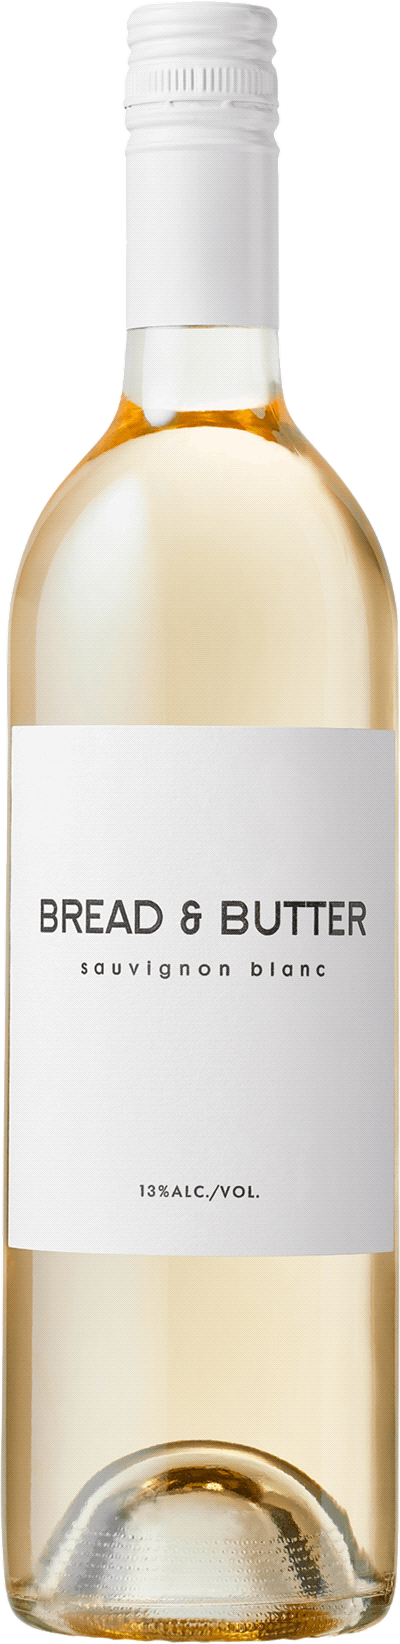 Bread & Butter Sauvignon blanc